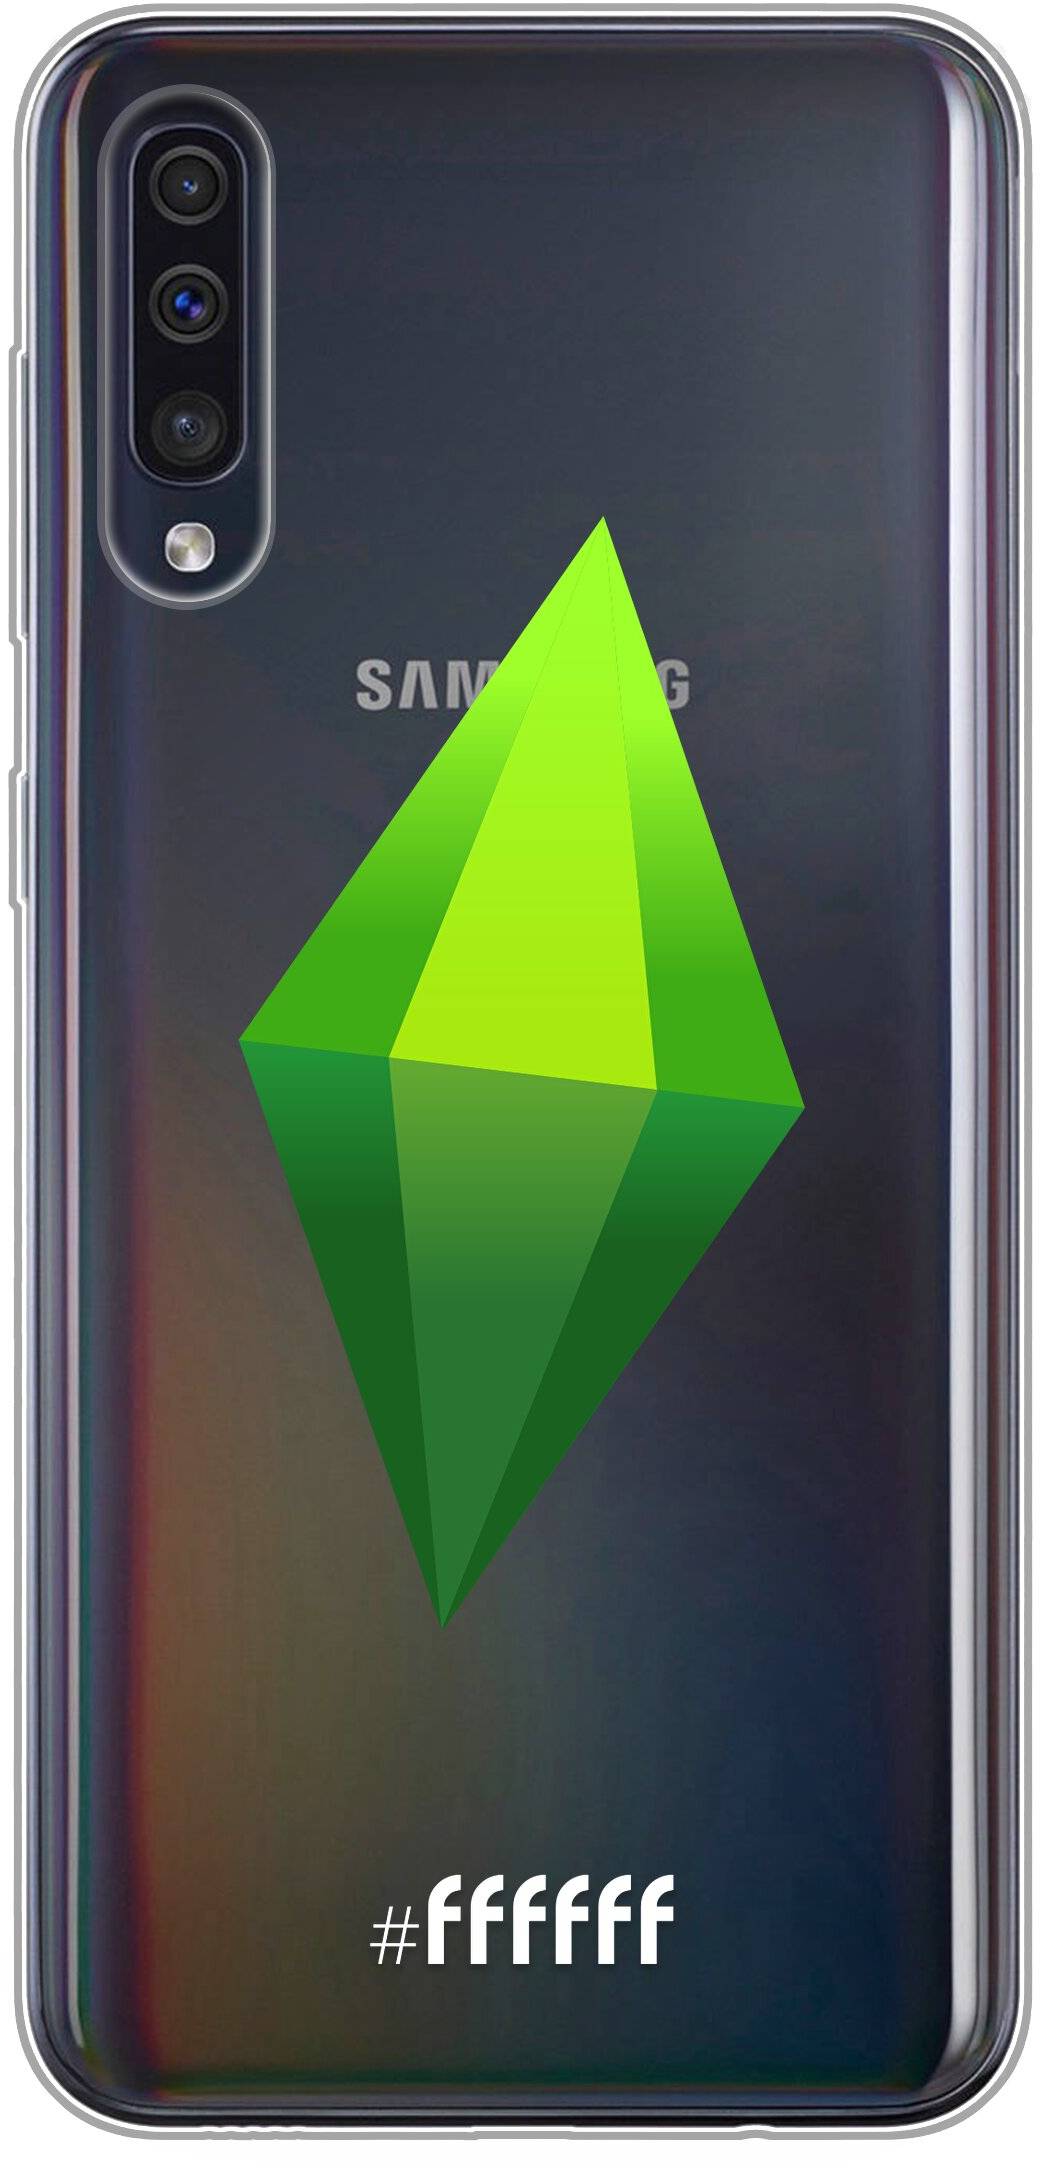 The Sims Galaxy A50